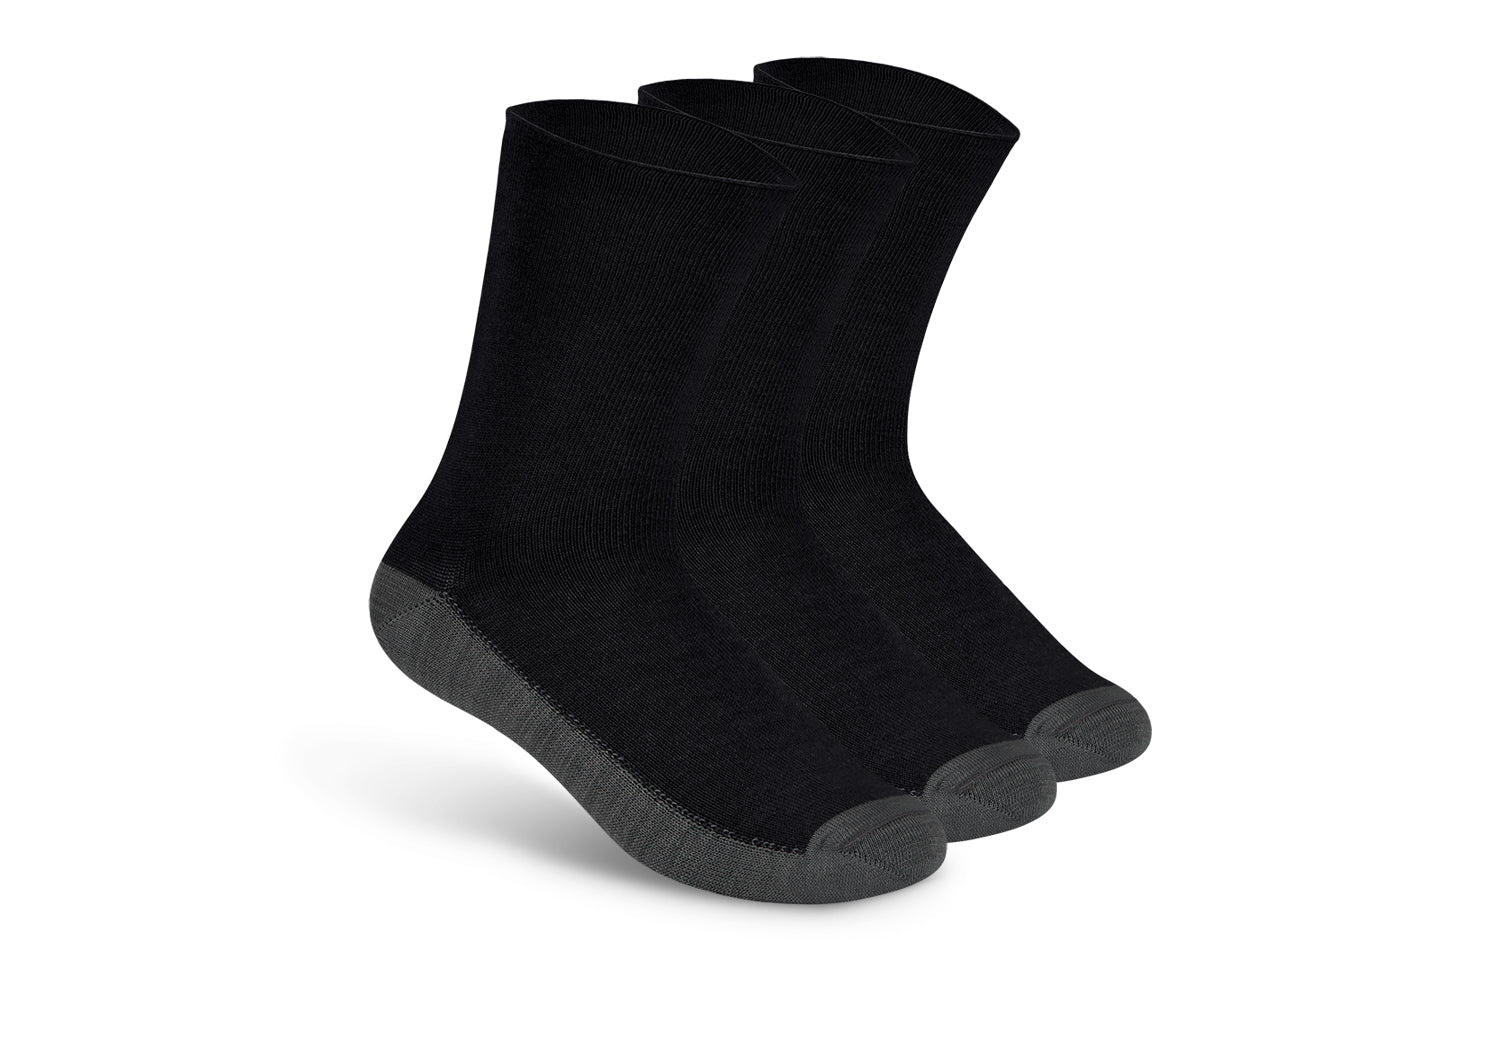 Casual/Dress Socks - Charcoal